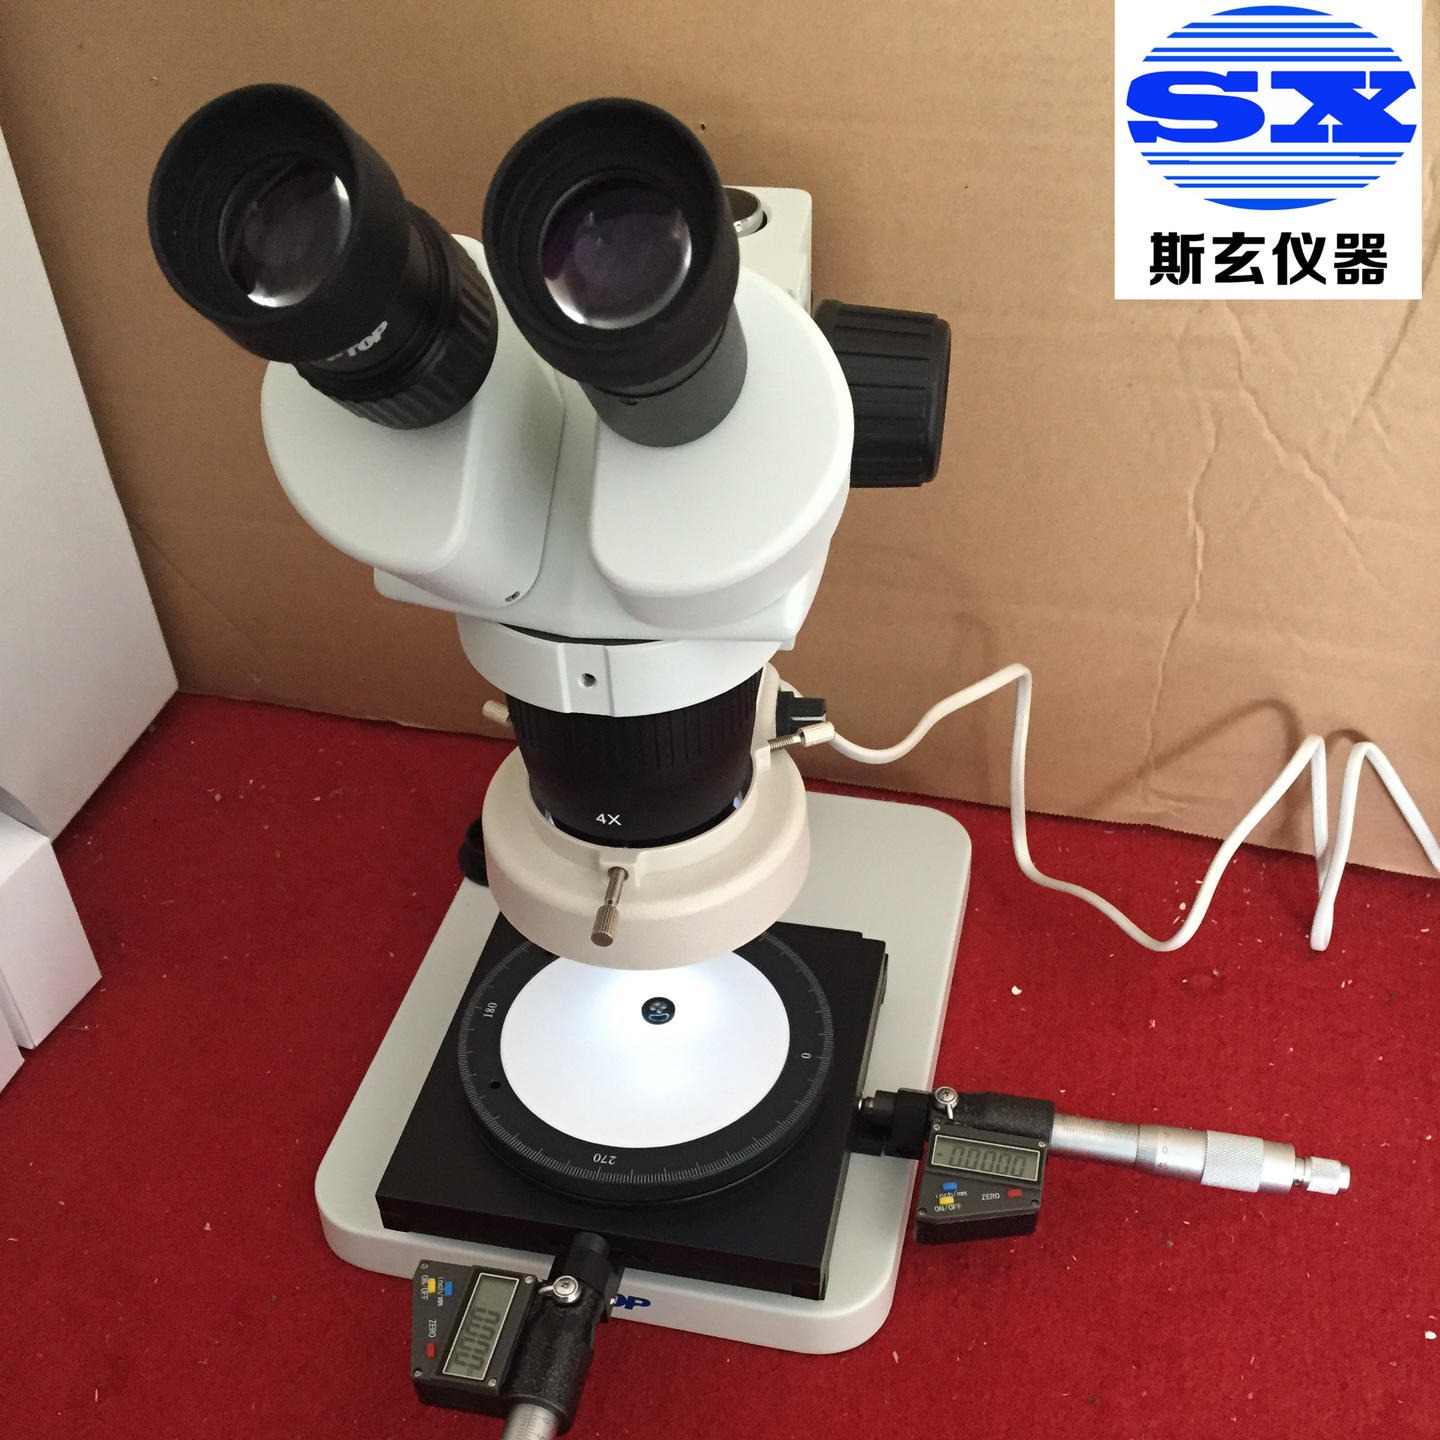 3C显微镜 电线测量显微镜   CCC光学显微测量仪  斯玄现货图片